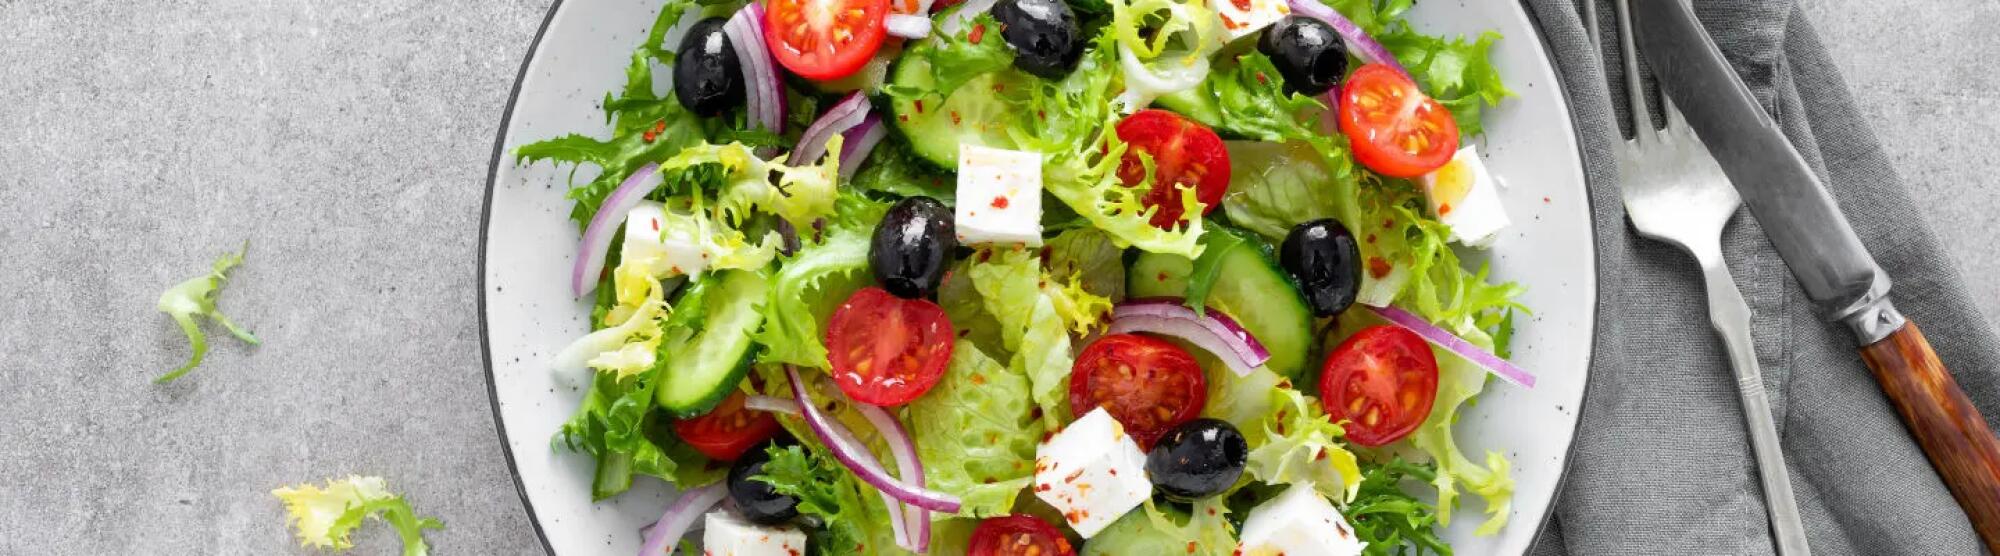 Recette : Salade crétoise aux fromages de brebis